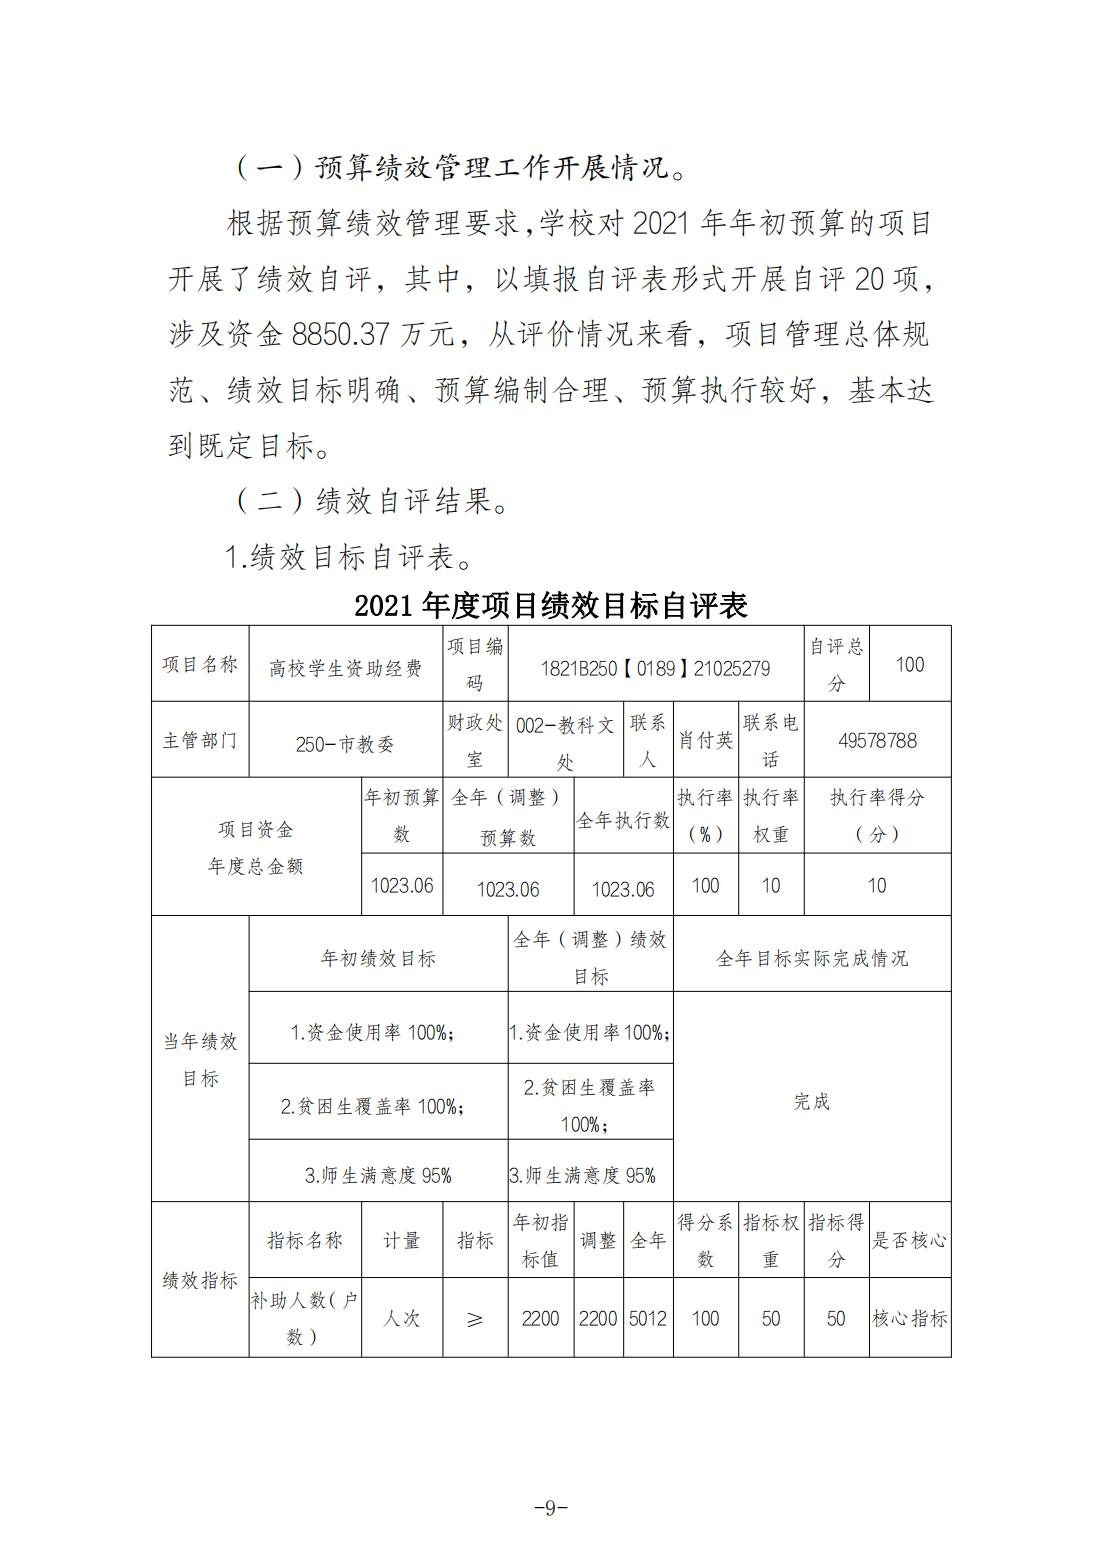 重庆城市职业学院2021年度部门决算情况说明_08.jpg